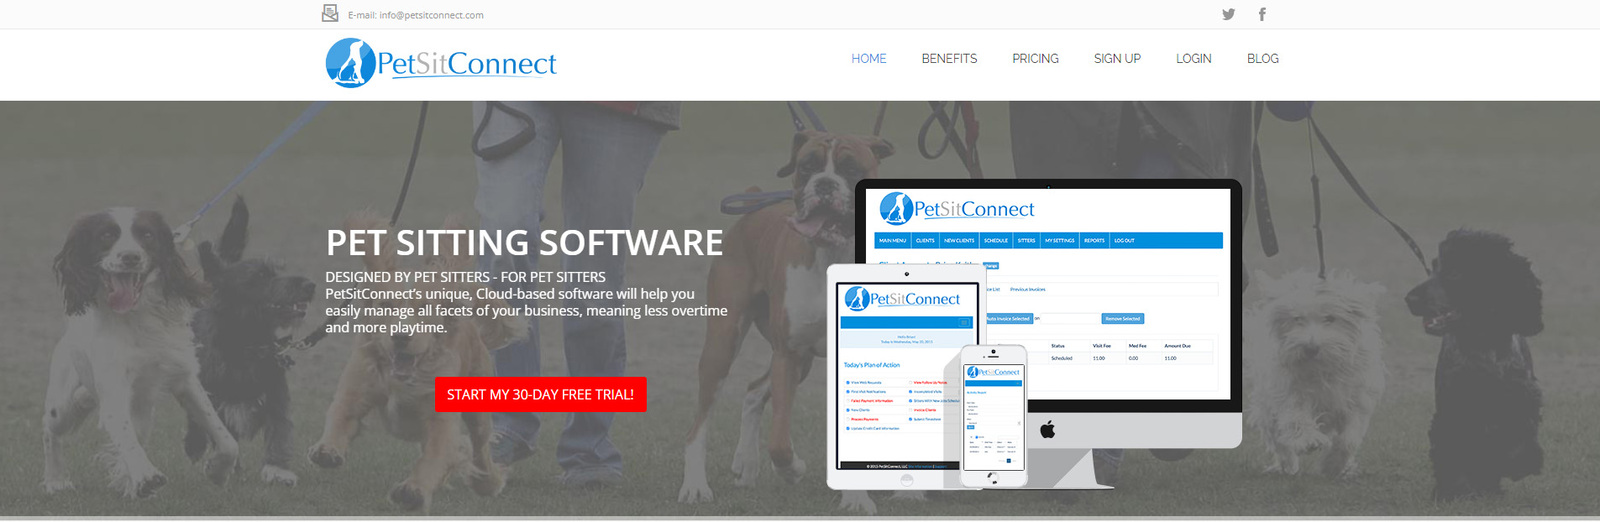 Instantâneo do PetSitConnect, uma opção de aplicativo para cuidar de animais de estimação com melhor classificação.